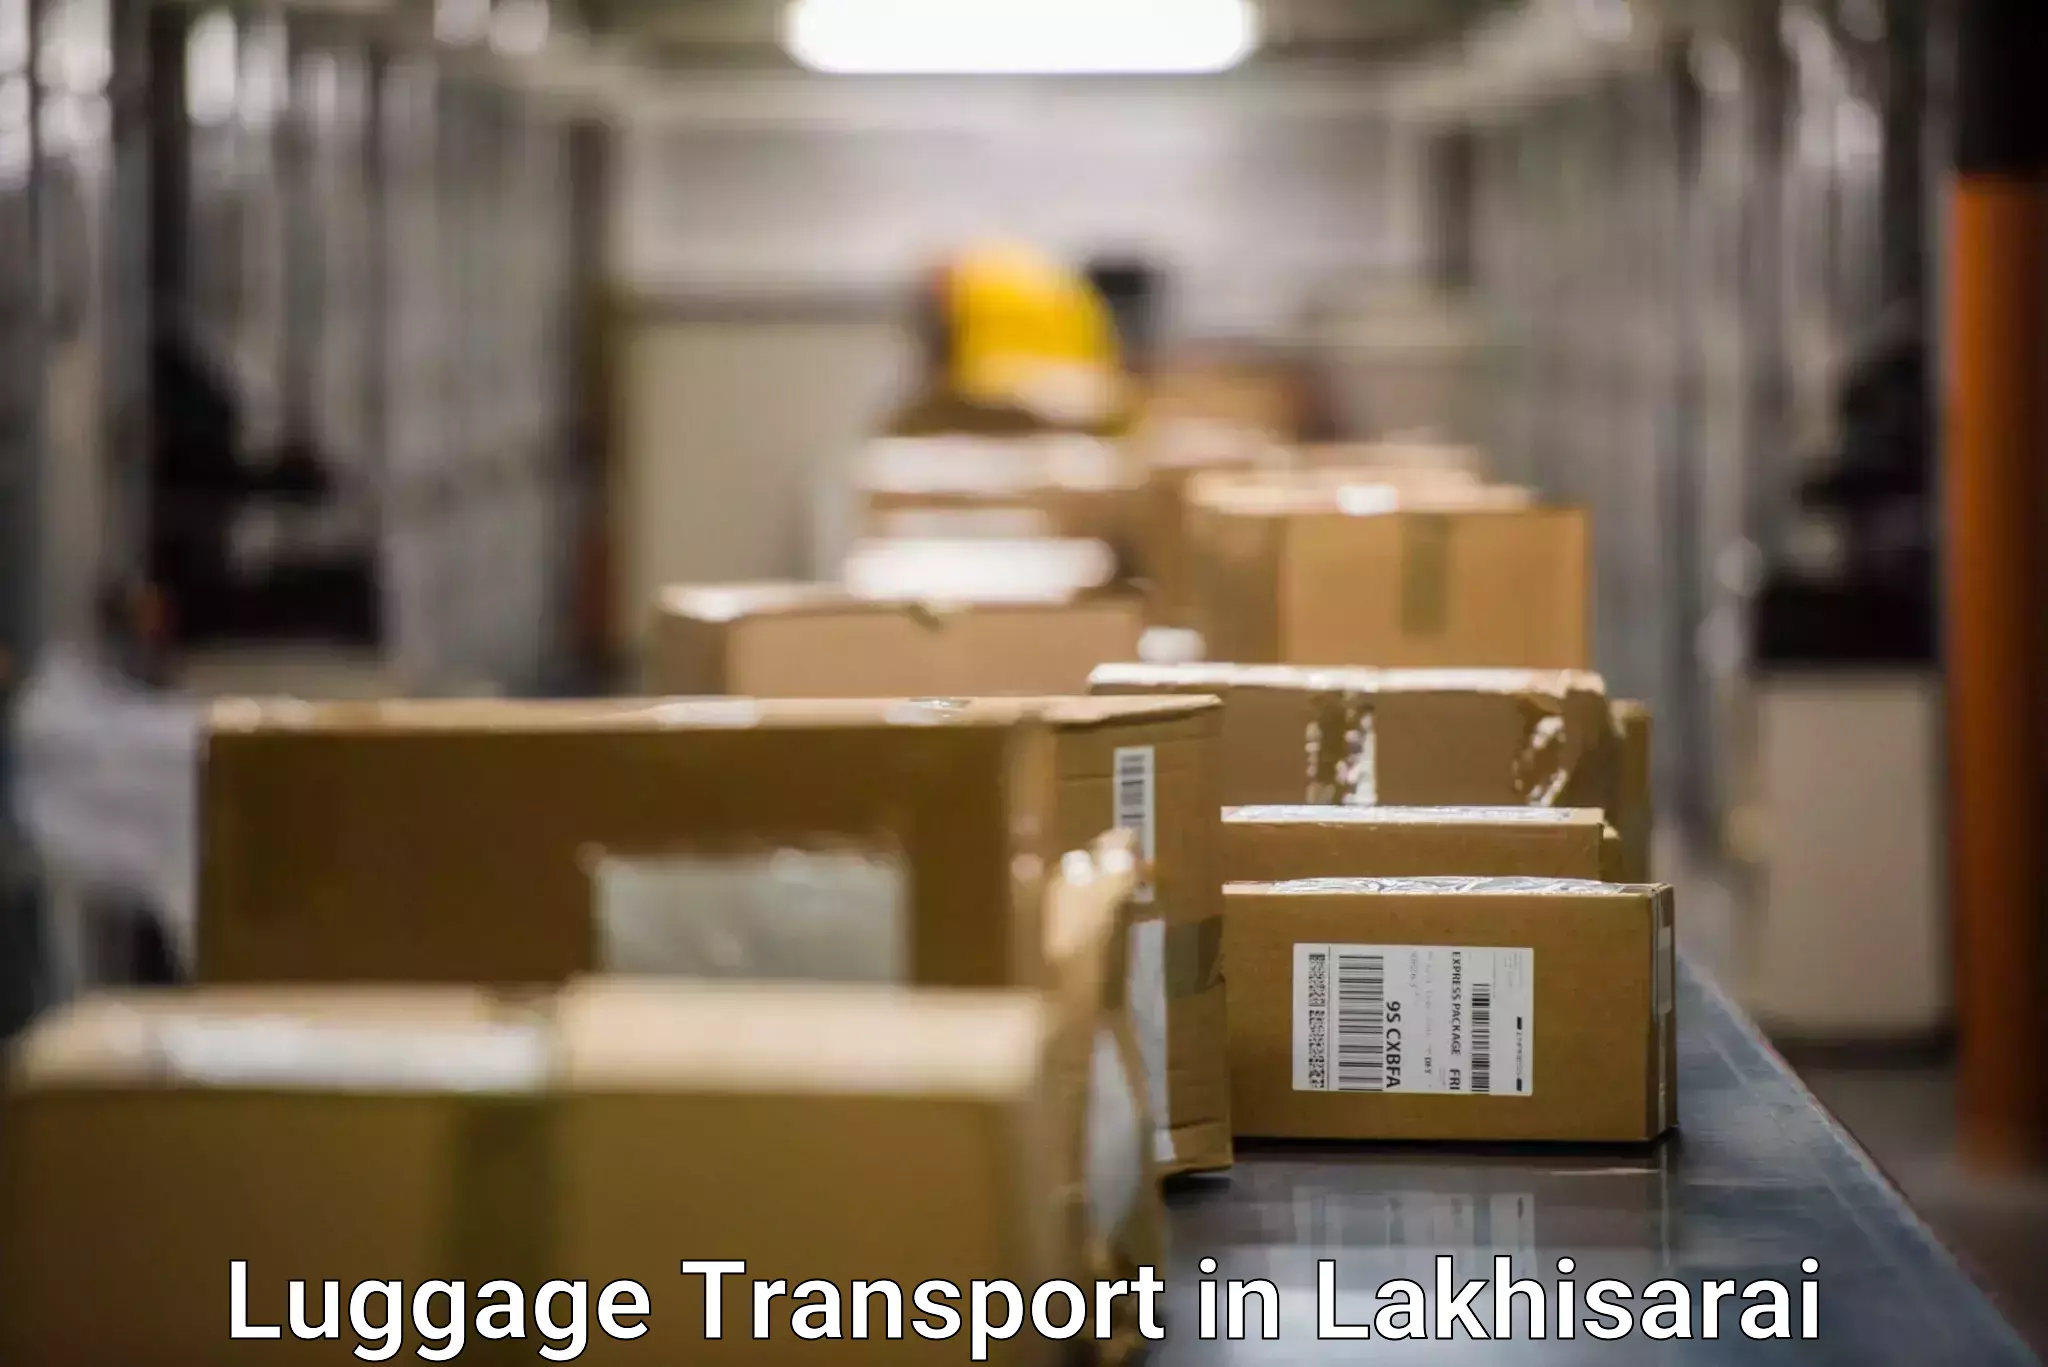 Luggage delivery optimization in Lakhisarai